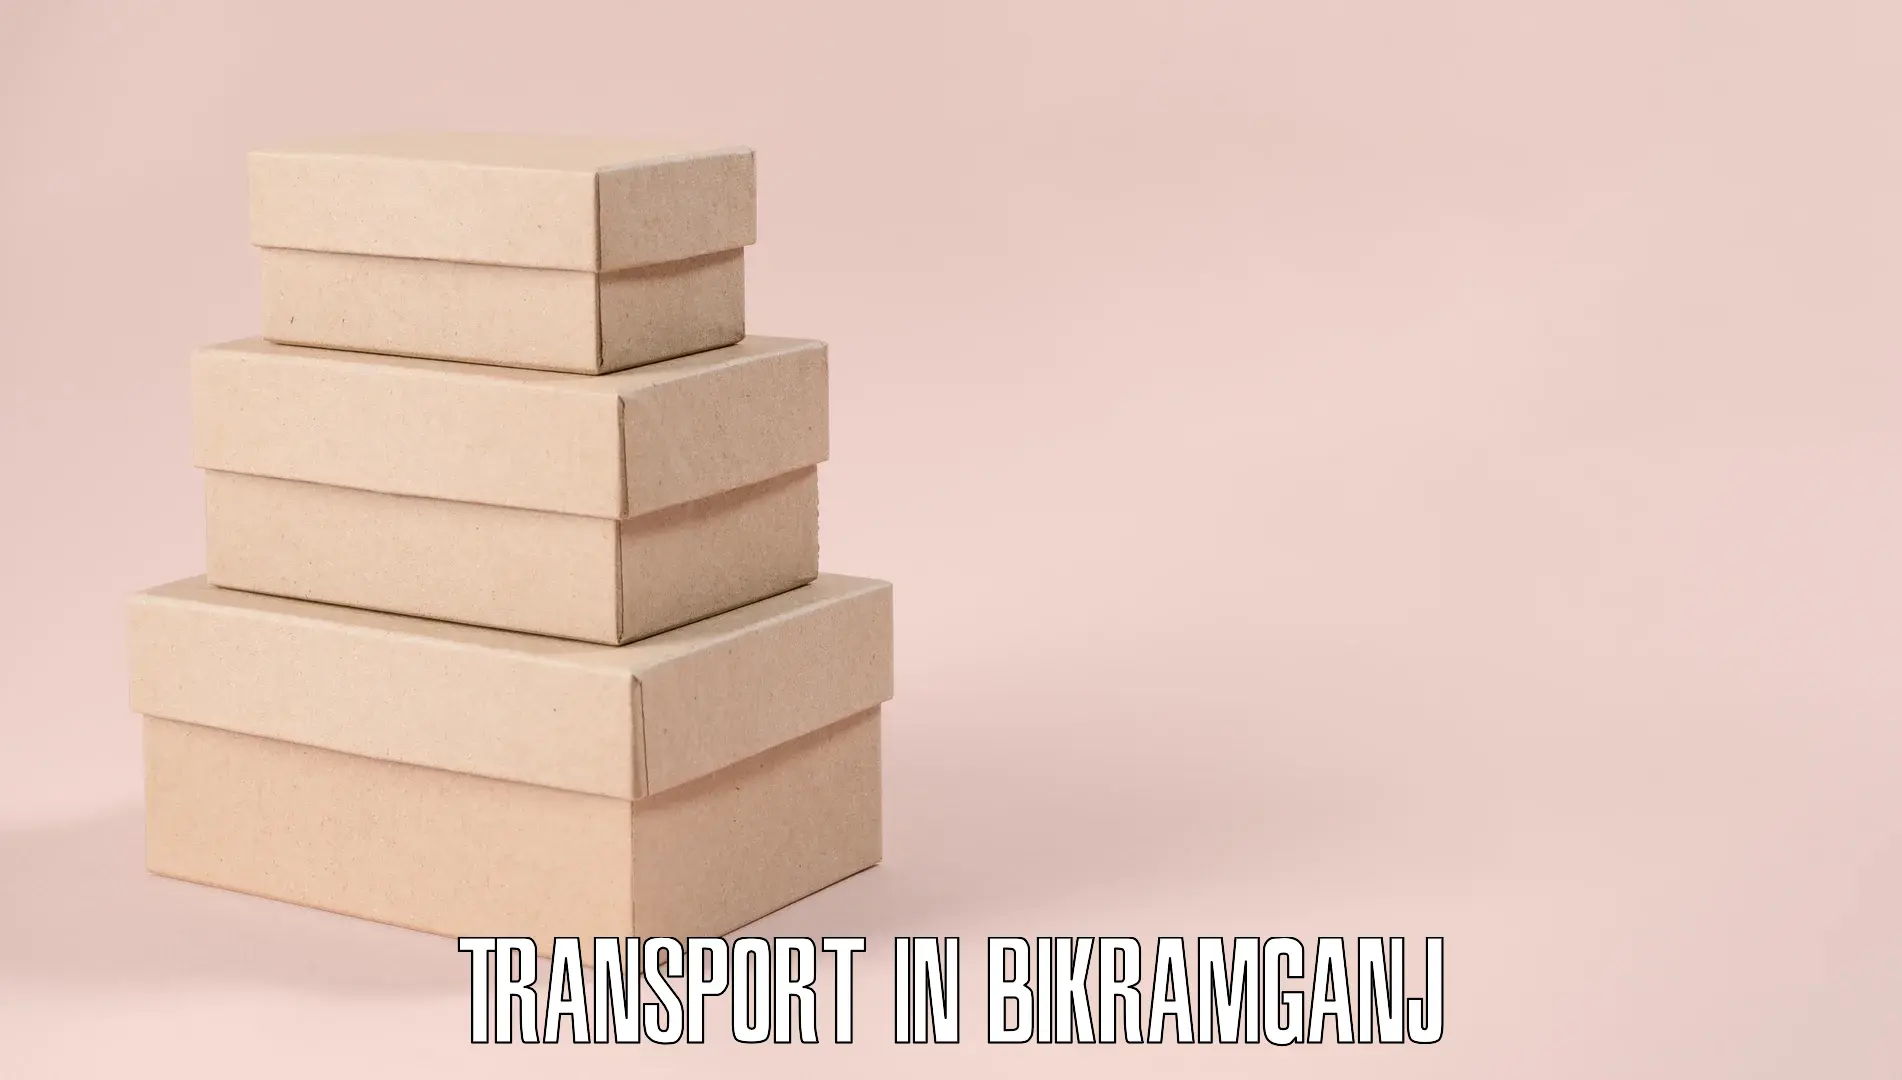 Transport shared services in Bikramganj